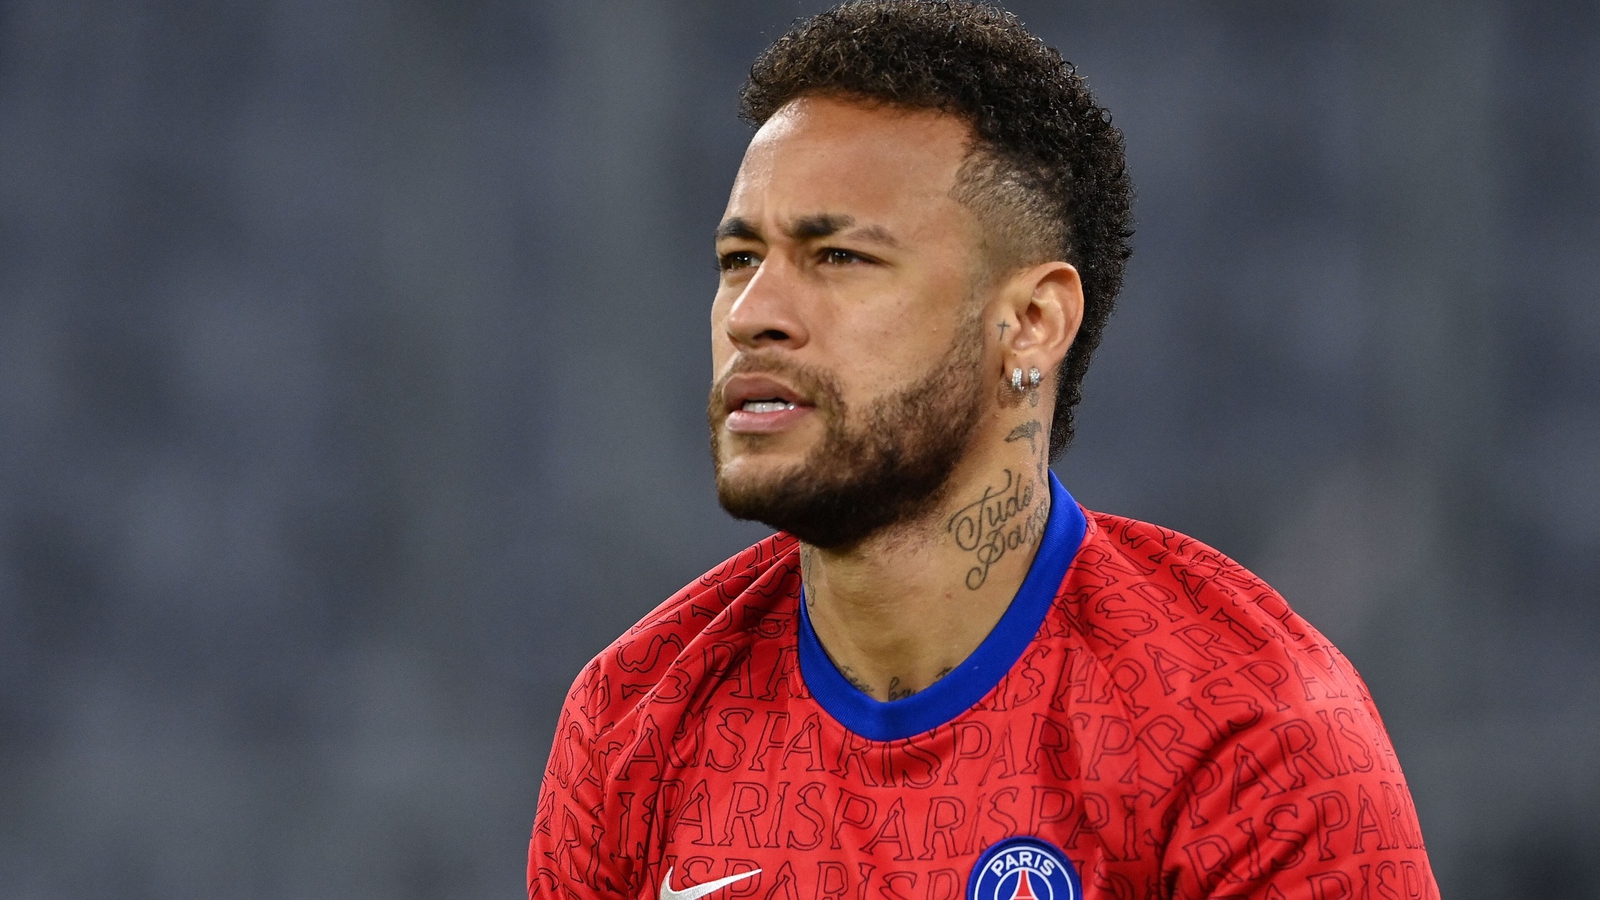 Neymar says Nike sexual assault claim an 'absurd lie'